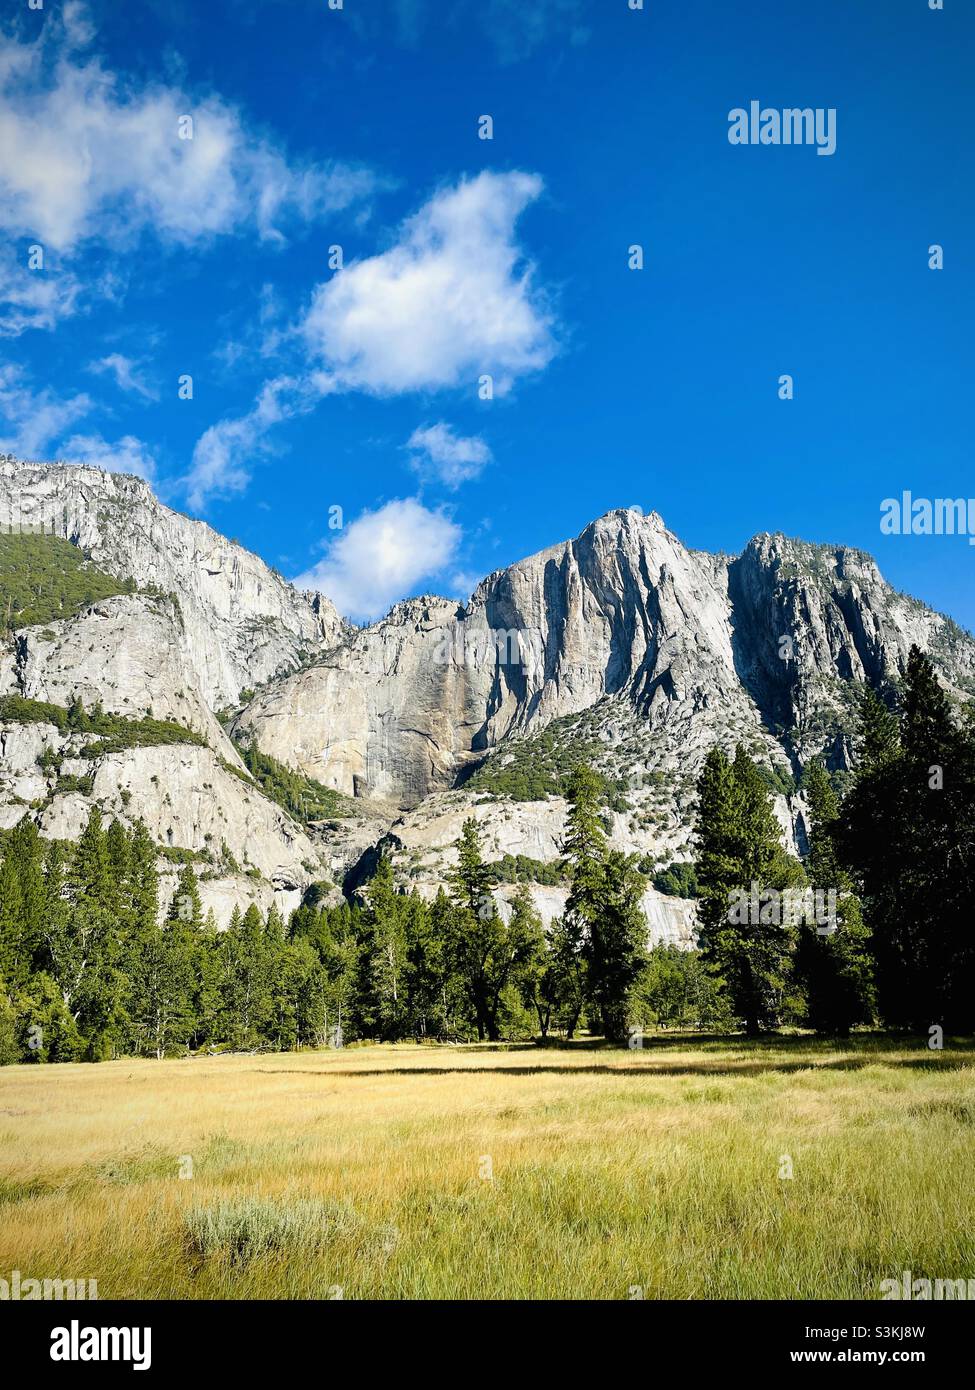 Ein Landschaftsfoto von den Yosemite-Fällen ohne fließendes Wasser. Ein häufiges Vorkommen im August und September, weil die Bäche austrocknen. Yosemite-Nationalpark, Kalifornien, USA. Stockfoto